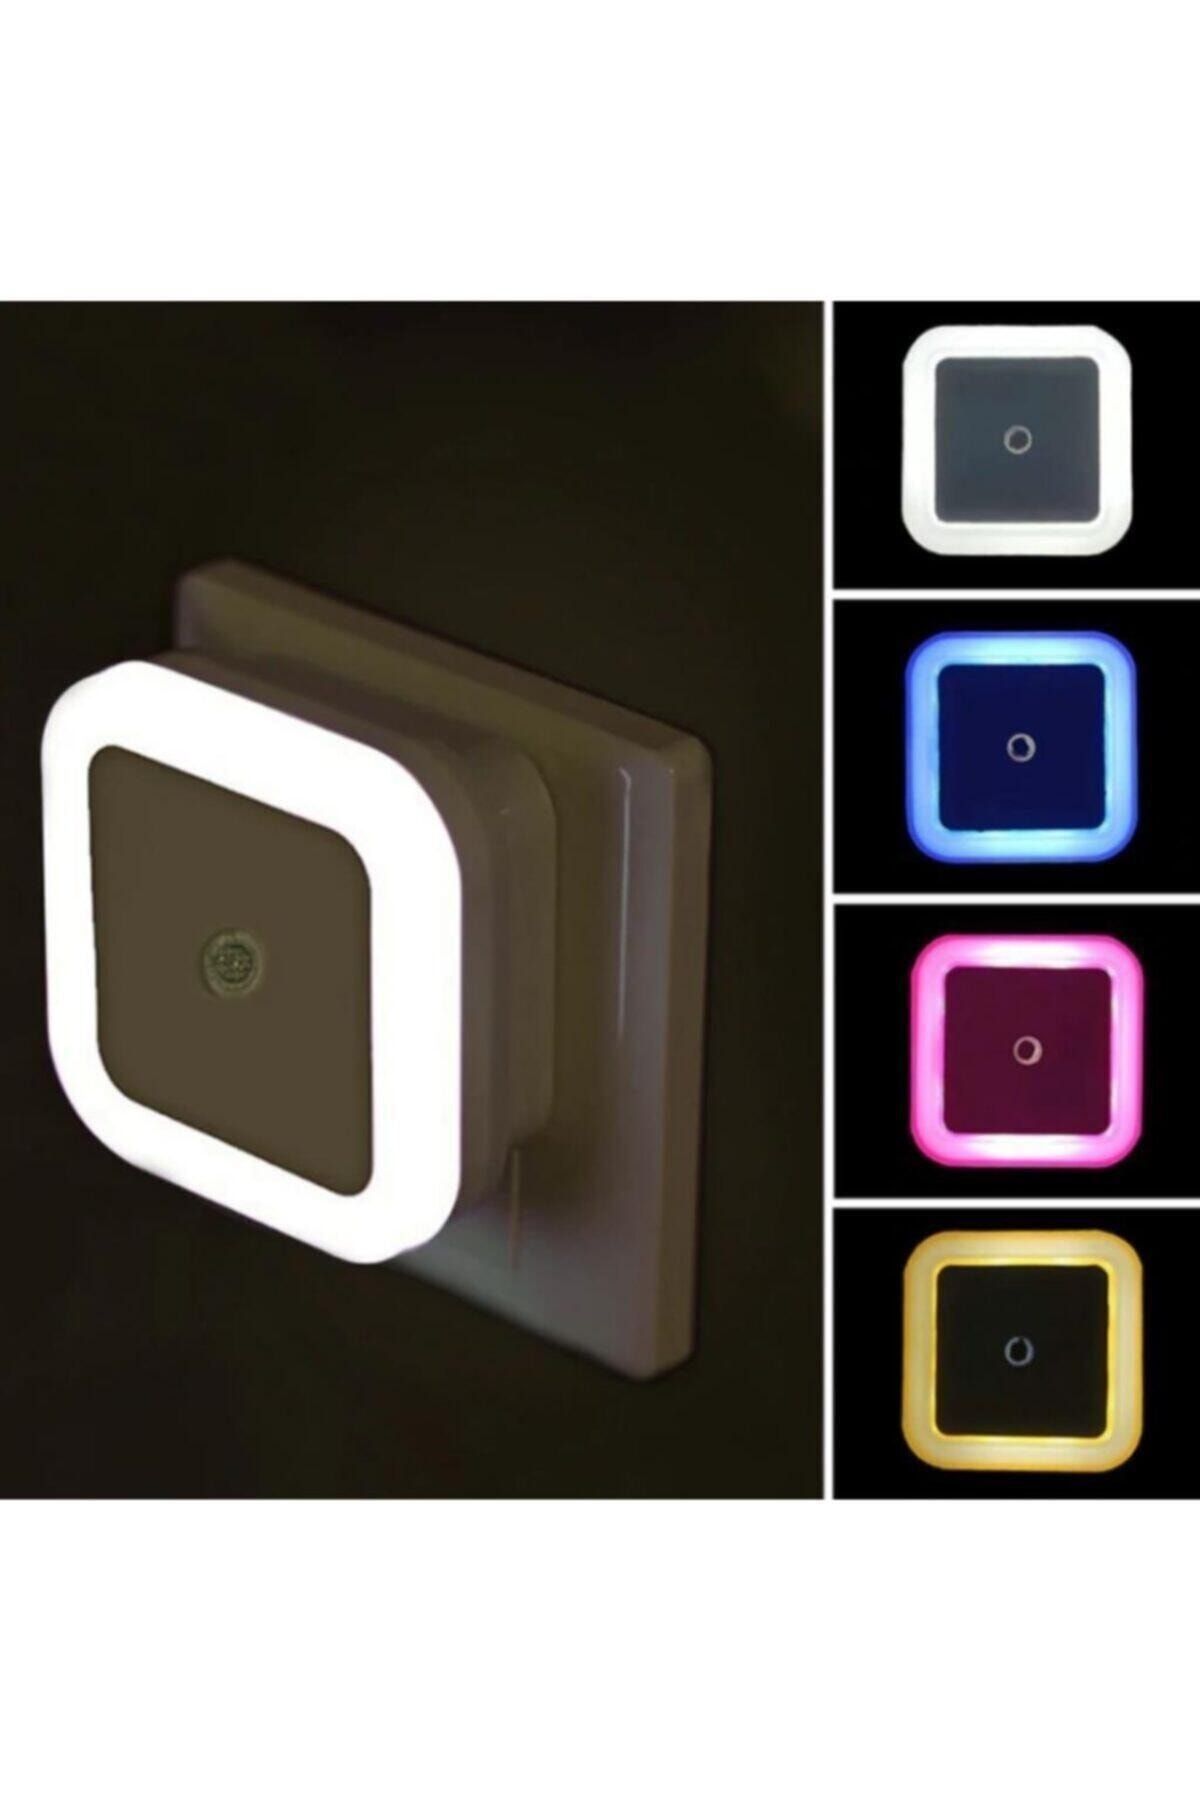 Livonelli Karanlık Sensörlü Gece Lambası Tak Çalıştır Karışık Renkli Spot Led Işık